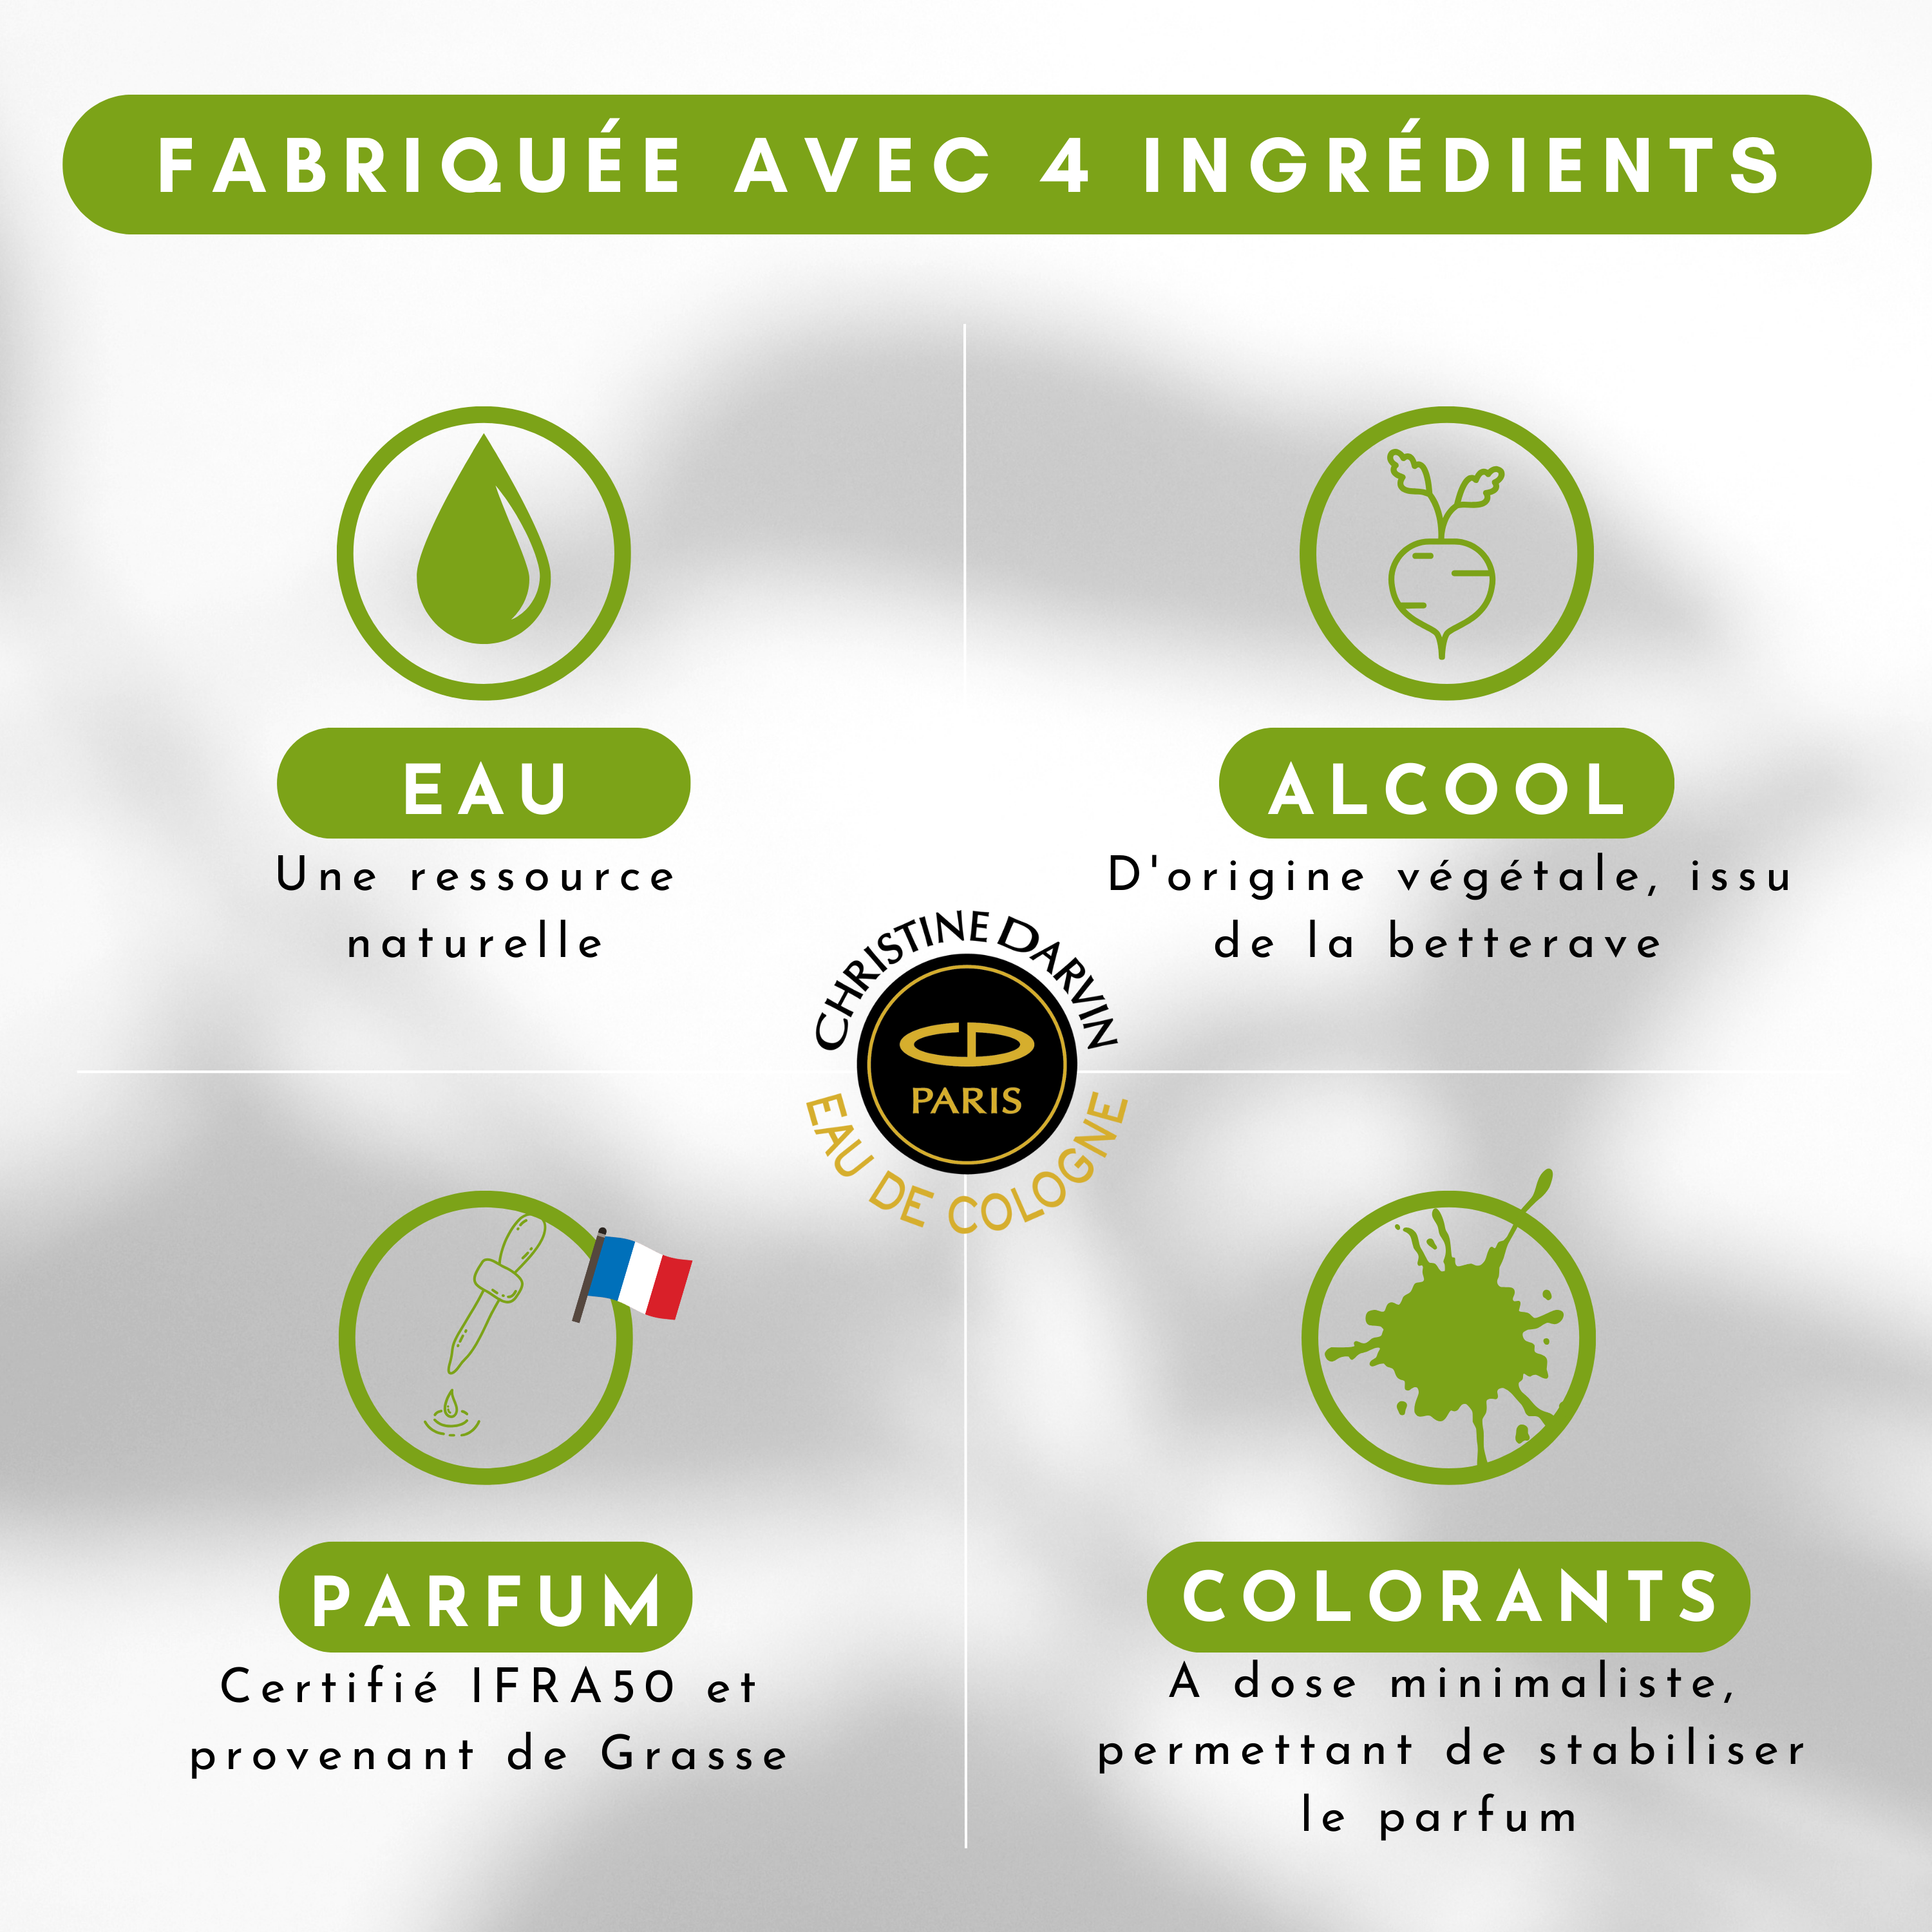 Ingrédient Eau de Cologne parfum Vetyver 97% d'origine naturelle et 100% français